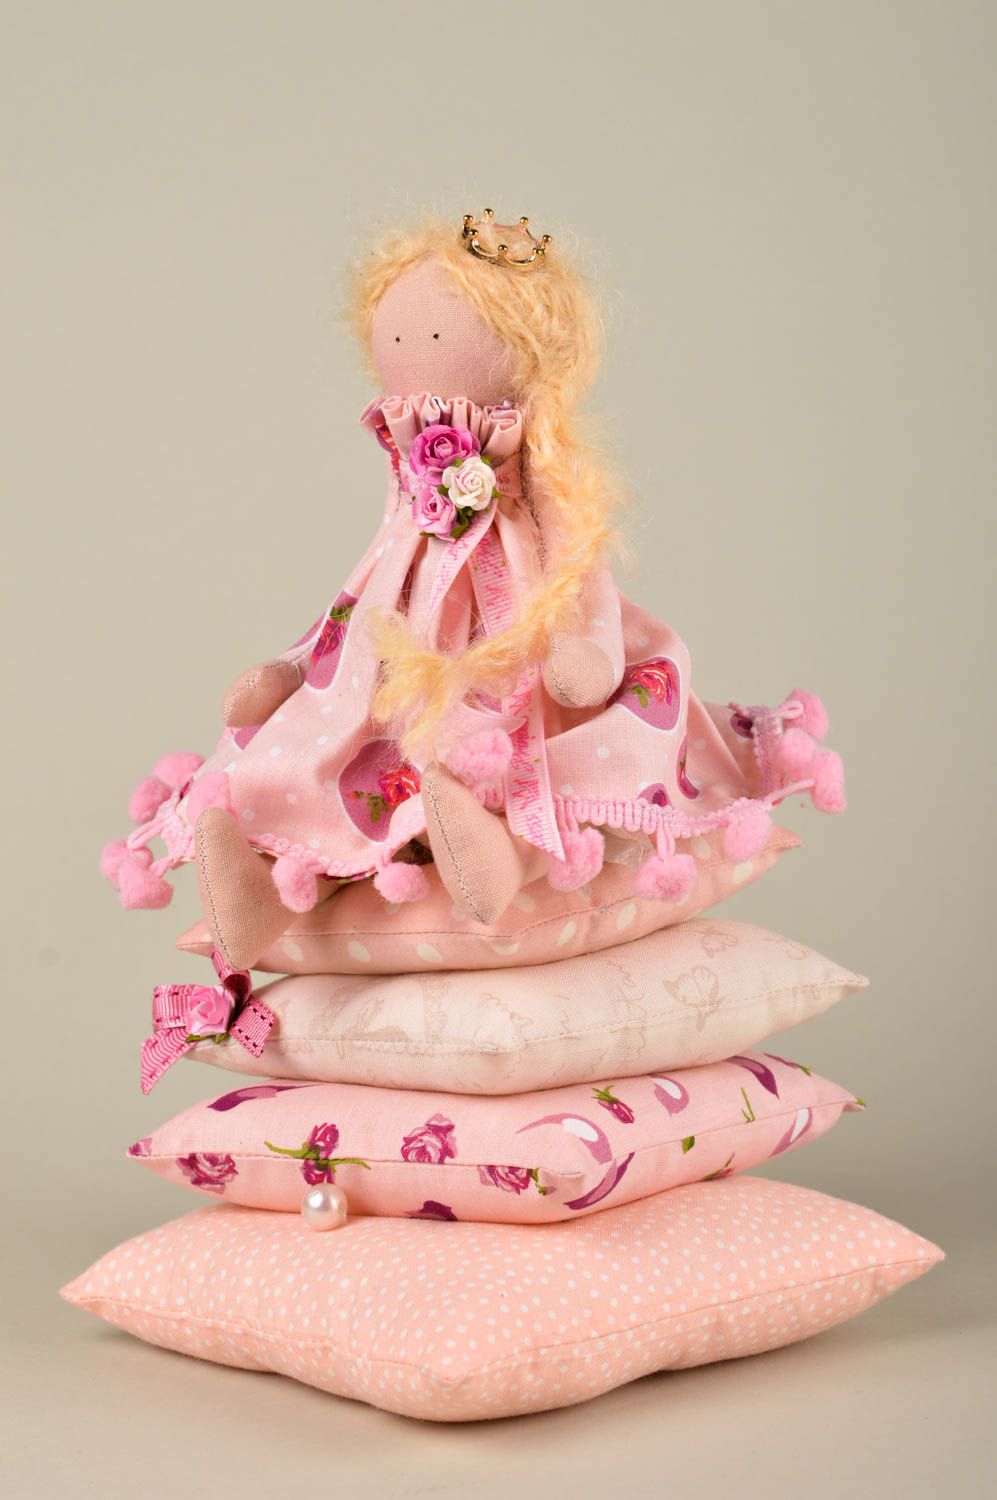 Handmade Deko Puppe aus Stoff Geschenk Idee Spielzeug Puppe auf Kissen in Rosa foto 1